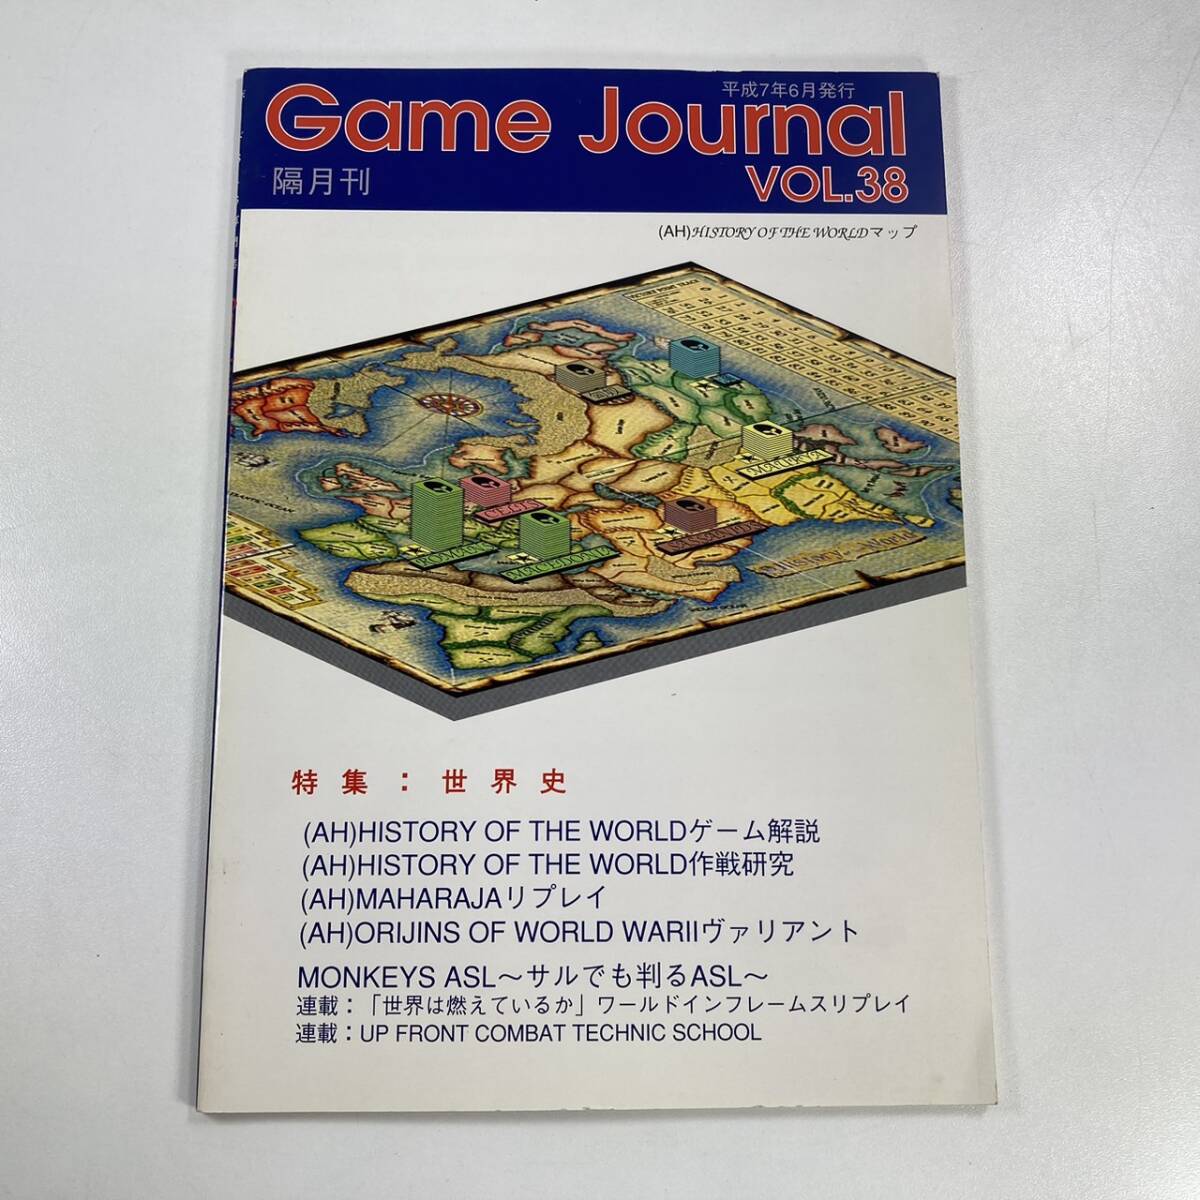 ゲームジャーナル Game Journal VOL.38 平成7年6月発行 (1995年)の画像1